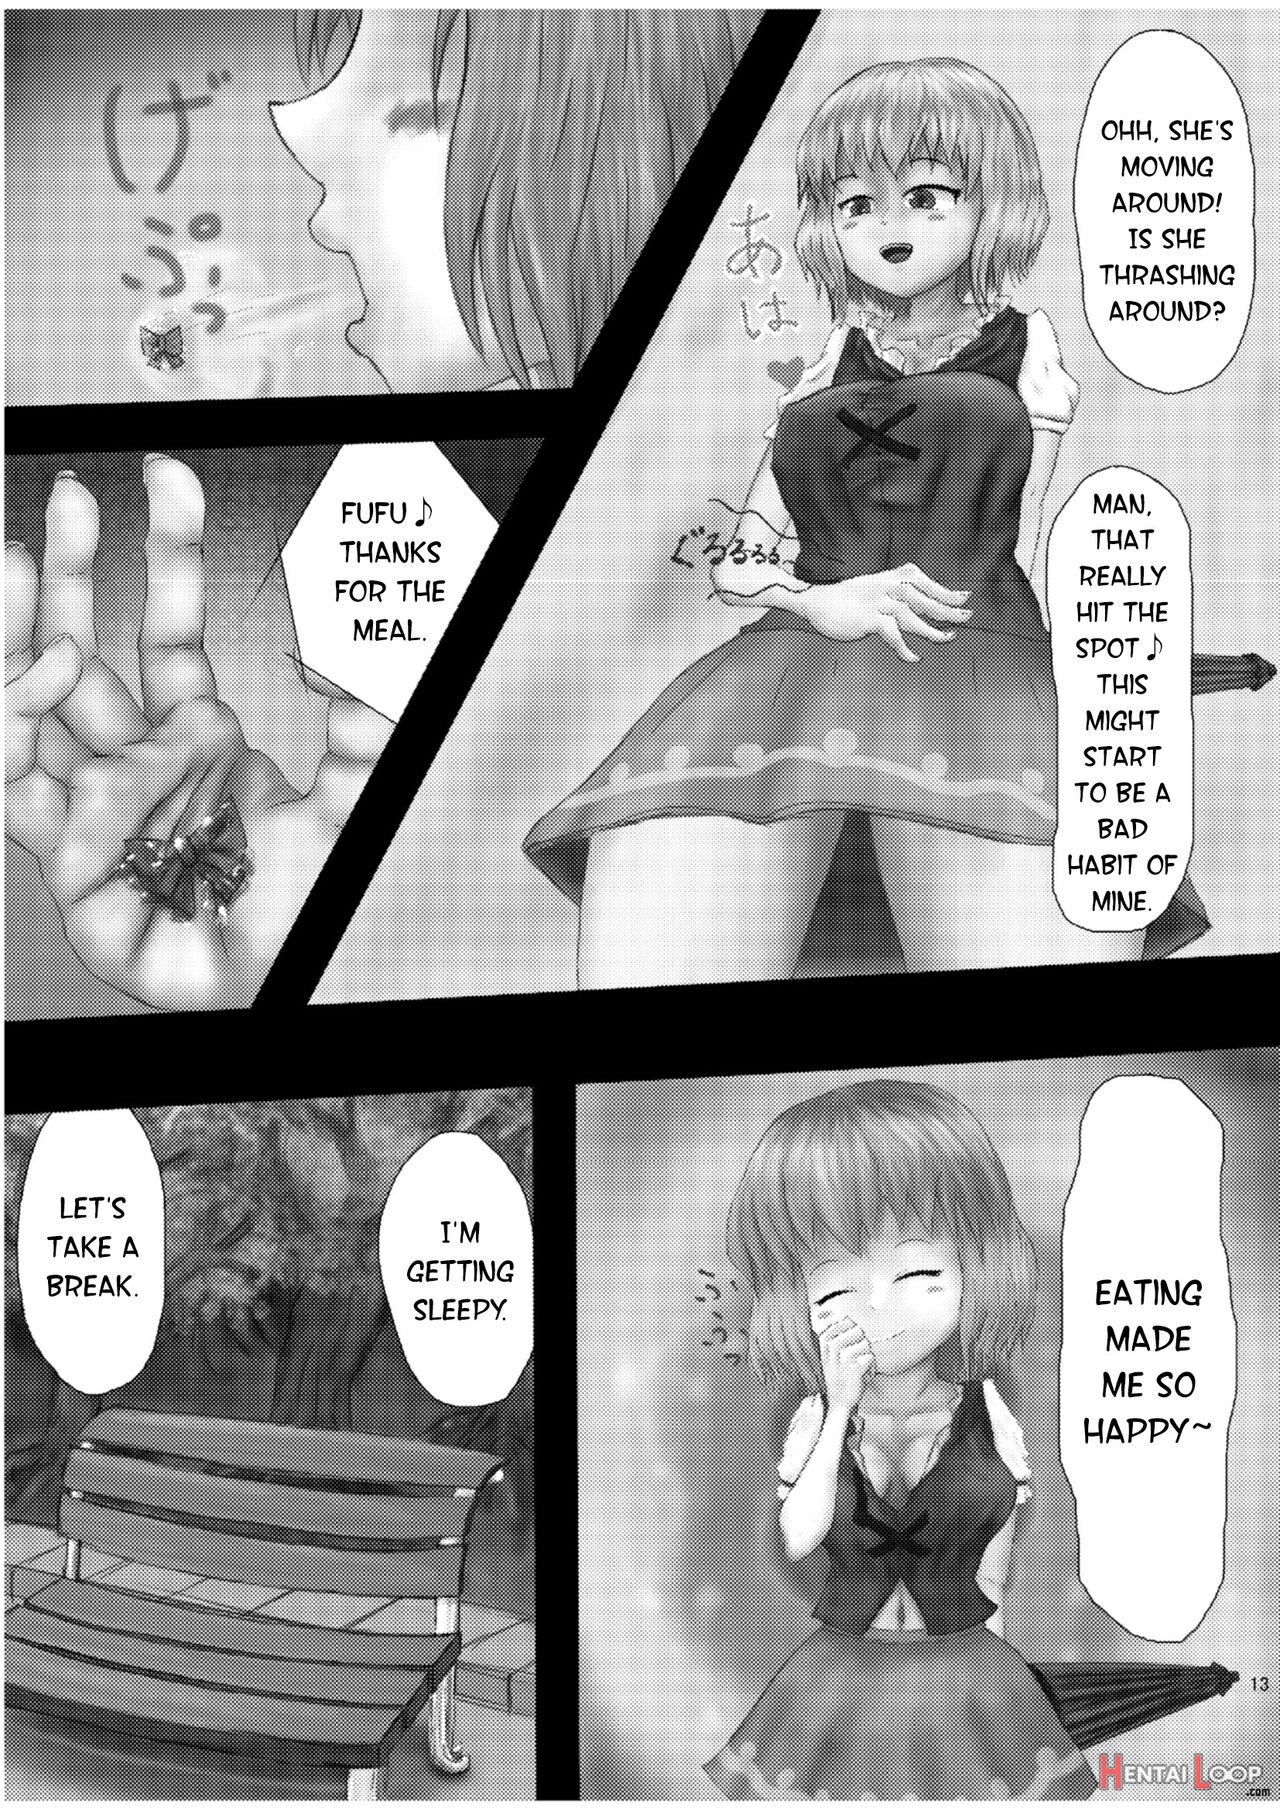 Kounai-ishouka Manga page 9